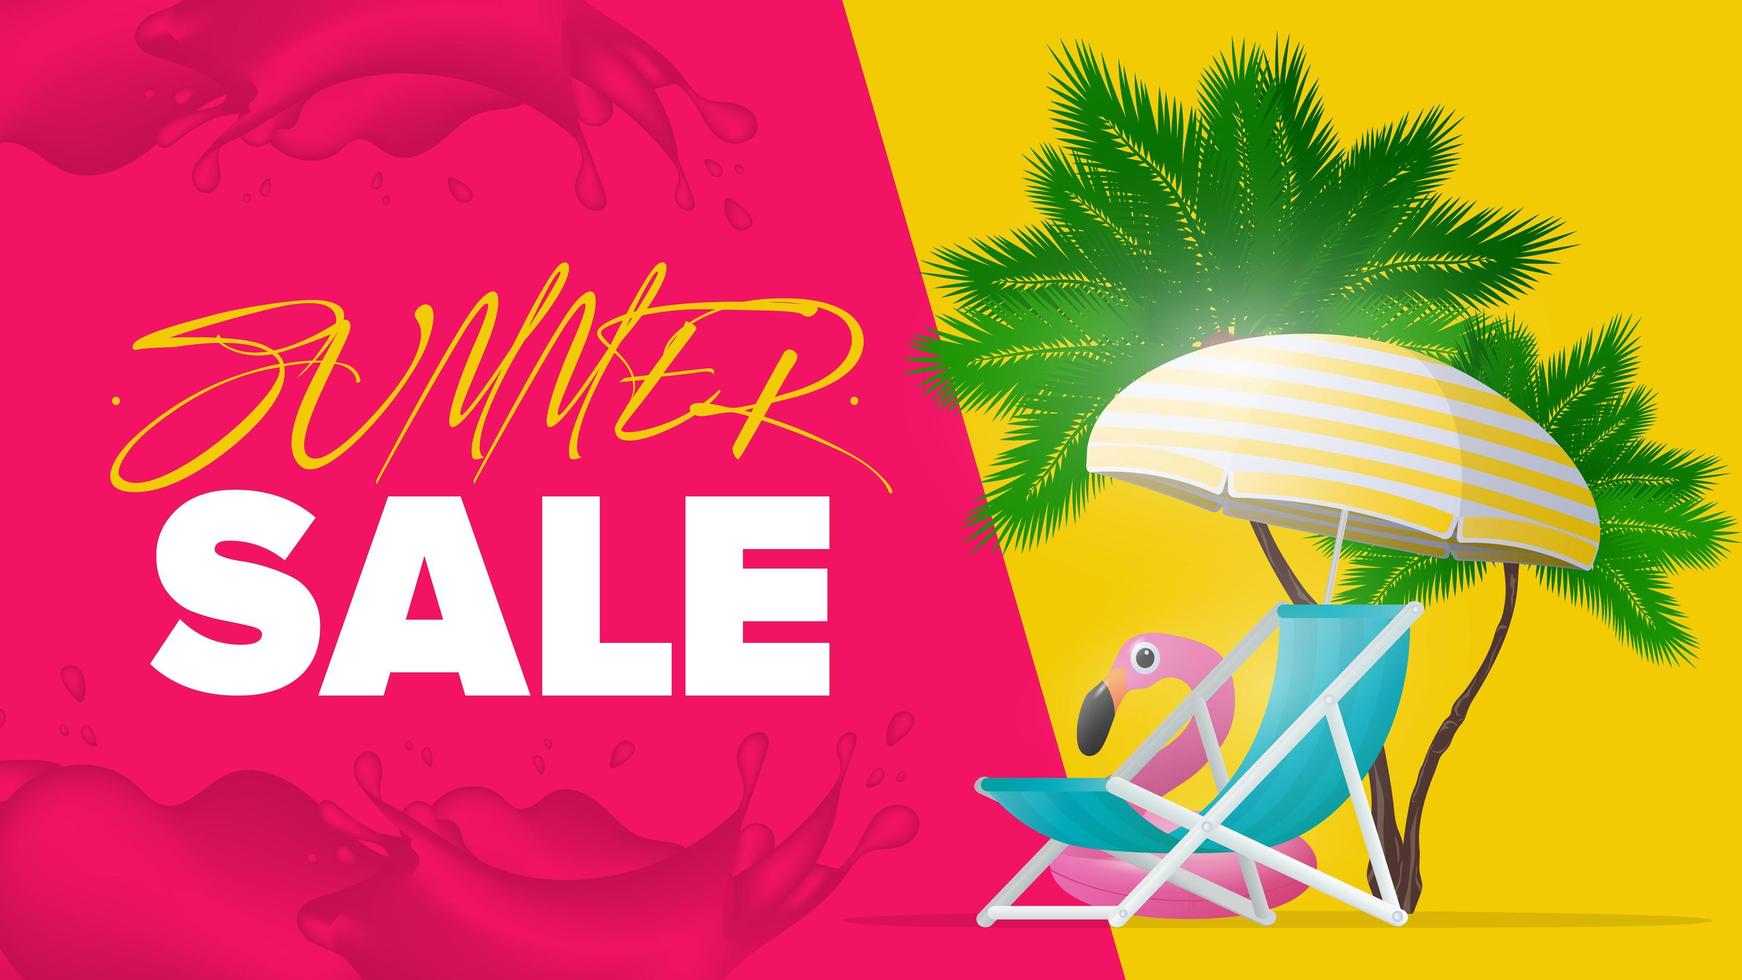 venda de horário de verão. espreguiçadeira e guarda-sol com listras amarelas isoladas no fundo branco. palmeiras e círculo de natação de flamingo rosa. ilustração vetorial vetor